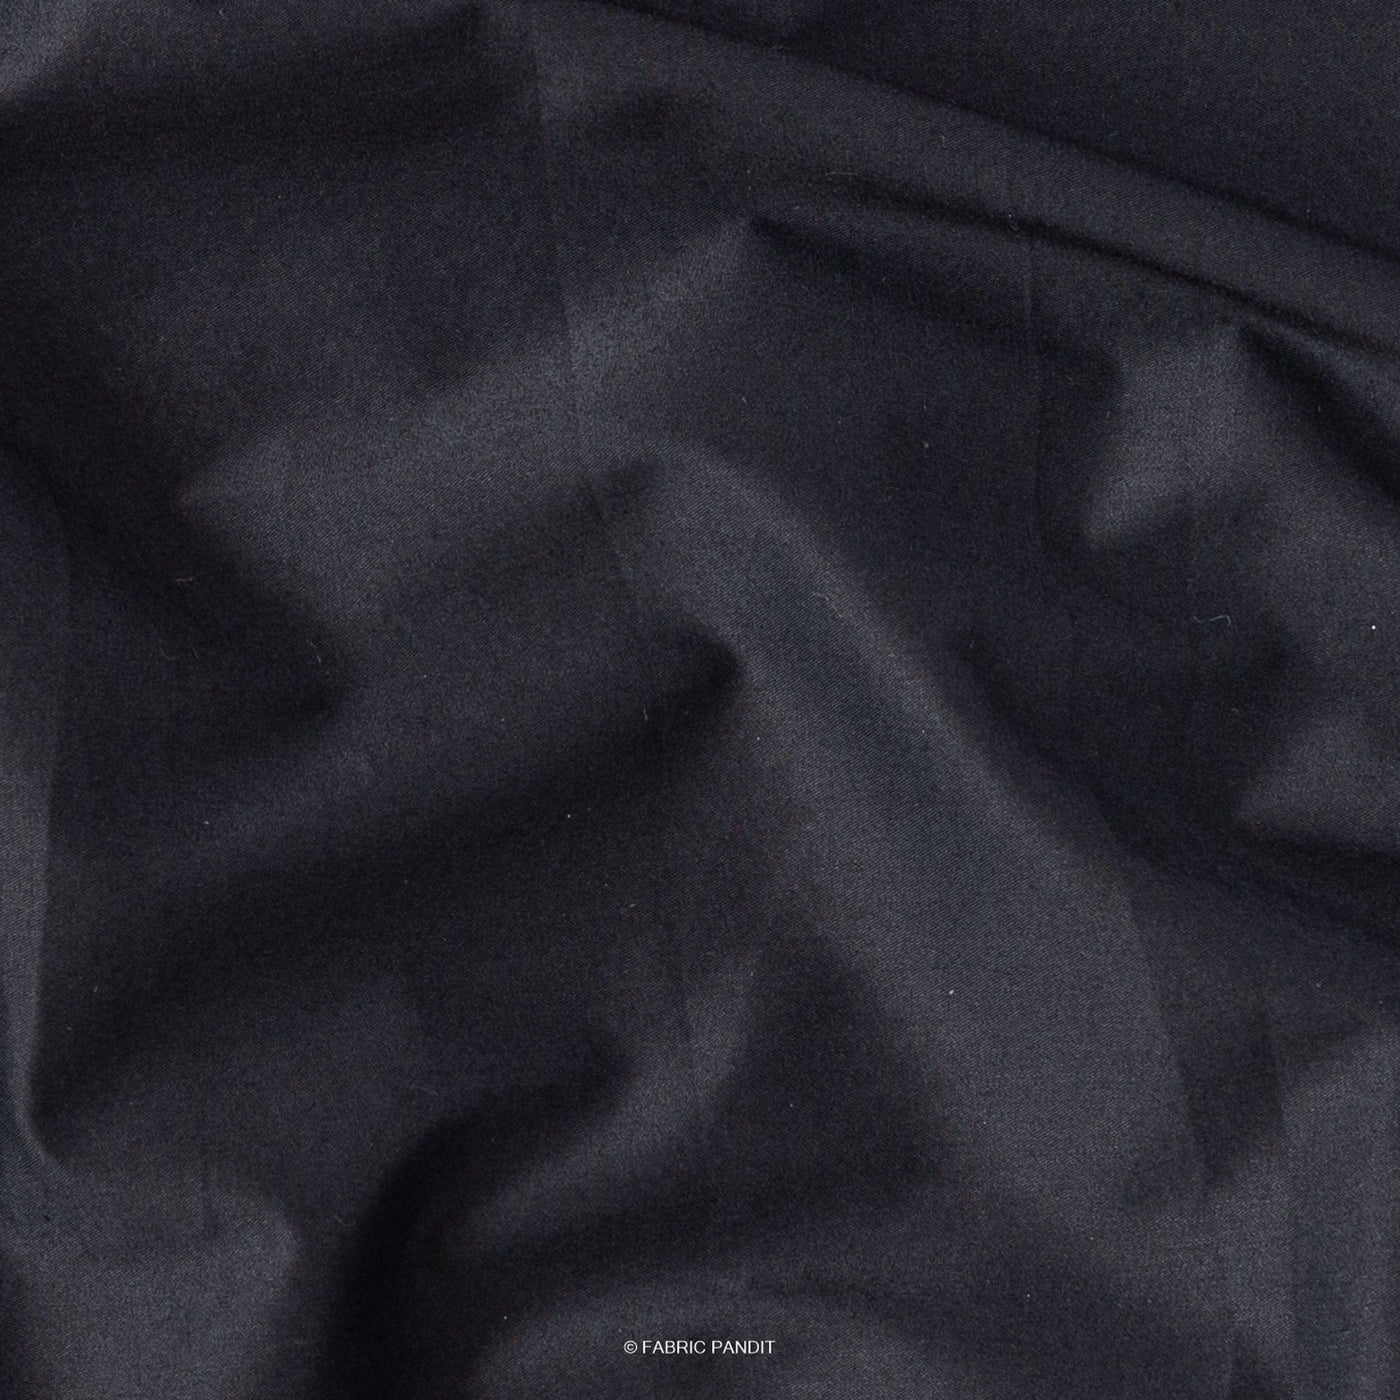 Fabric Pandit Shirt Carbon Black Premium Cotton Lycra Stretch Unstitched Men's Shirt Piece (Width 54 Inch | 1.60 Meters)